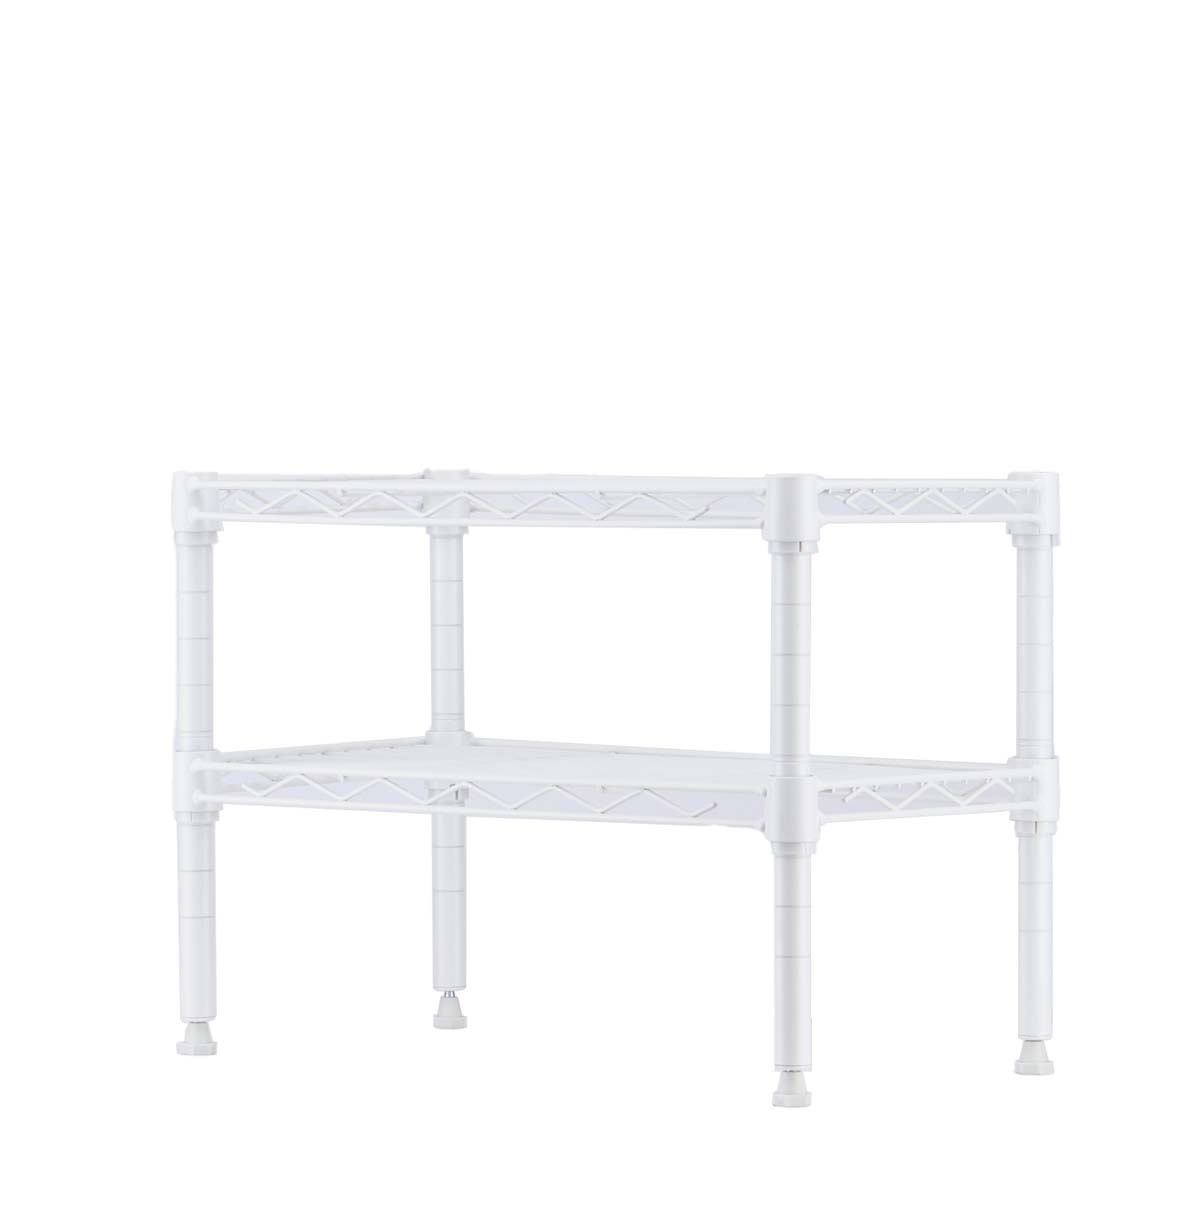 2-Tier Cabinkitchen storage shelving unit manufactureet Shelf / Kitchen Counter Rack Organizer / Counter top racks for kitchen